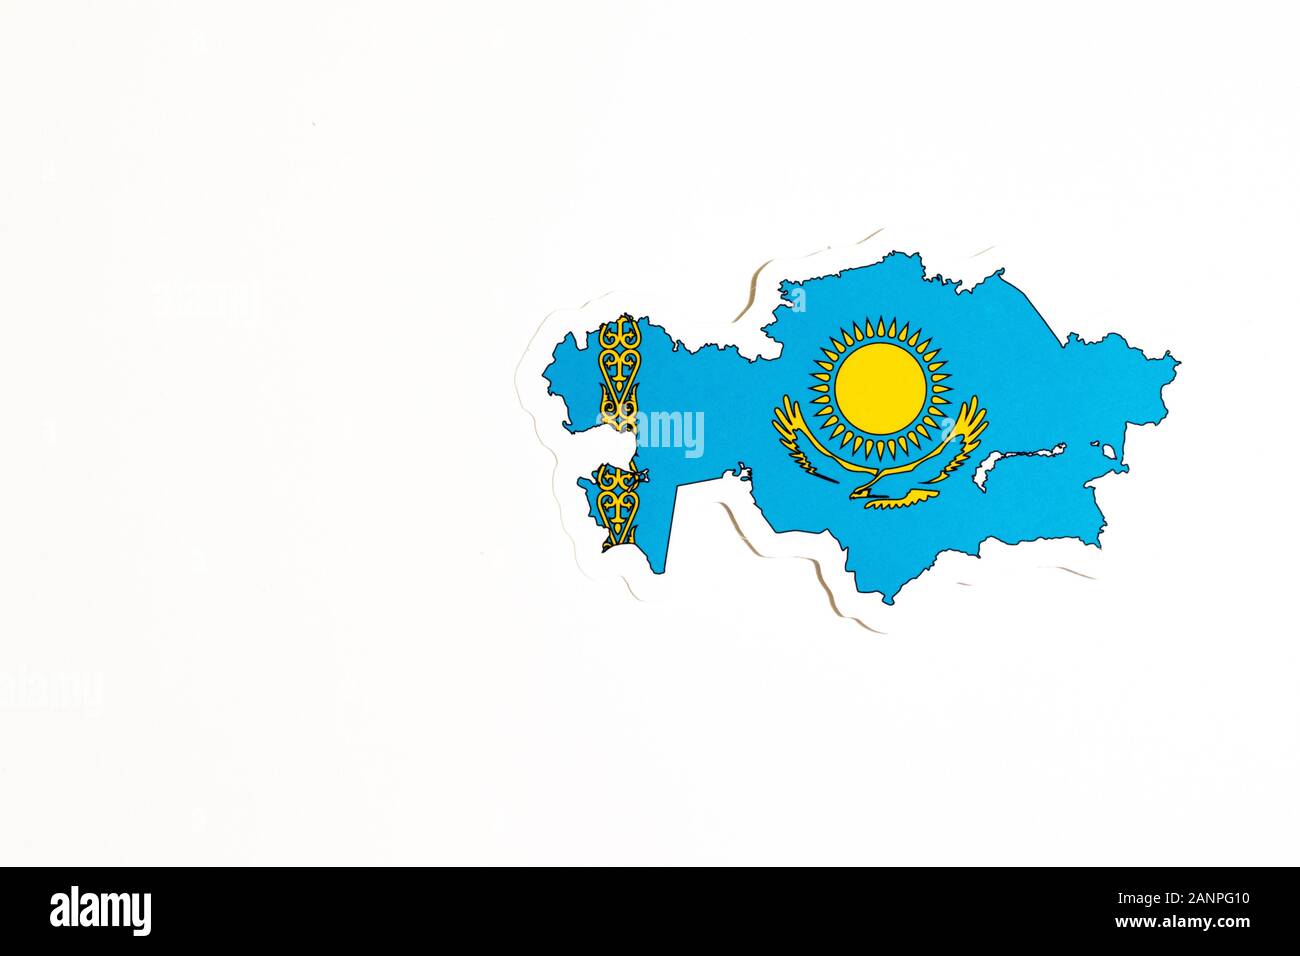 Los Angeles, Californie, États-Unis - 17 janvier 2020: Drapeau national du Kazakhstan. Contour du pays sur fond blanc avec espace de copie. Politique Banque D'Images